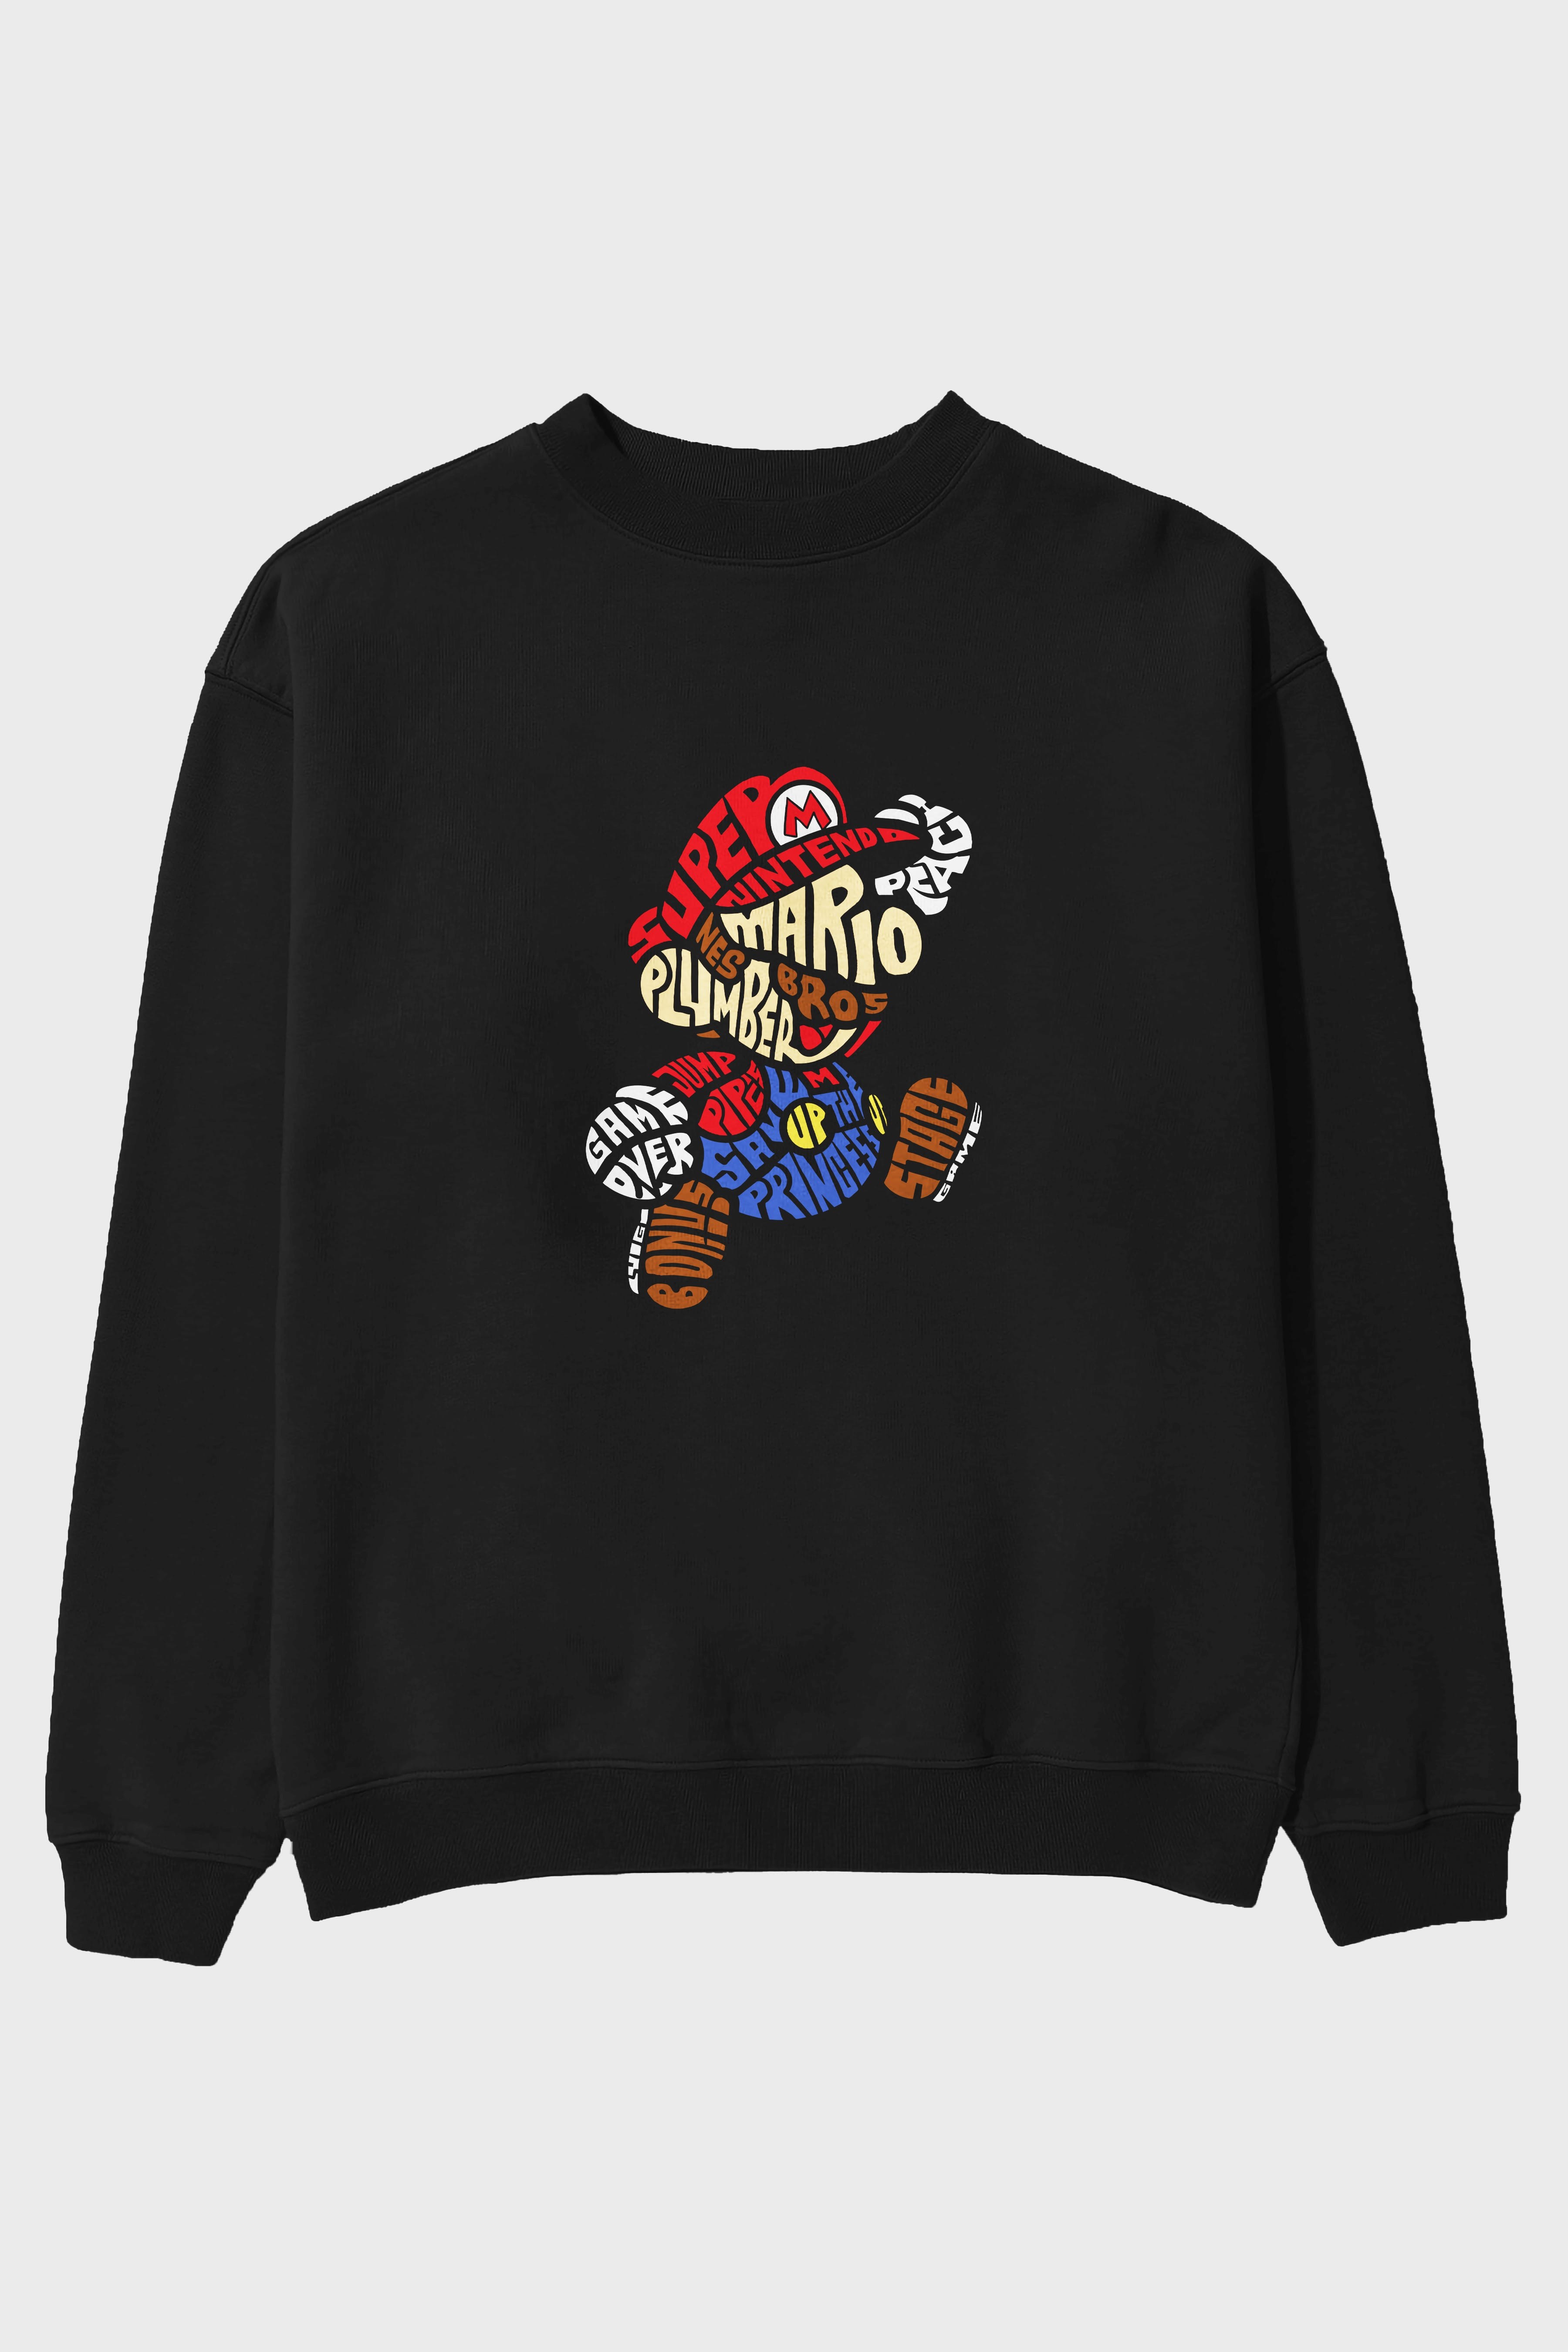 Mario Bros Ön Baskılı Oversize Sweatshirt Erkek Kadın Unisex